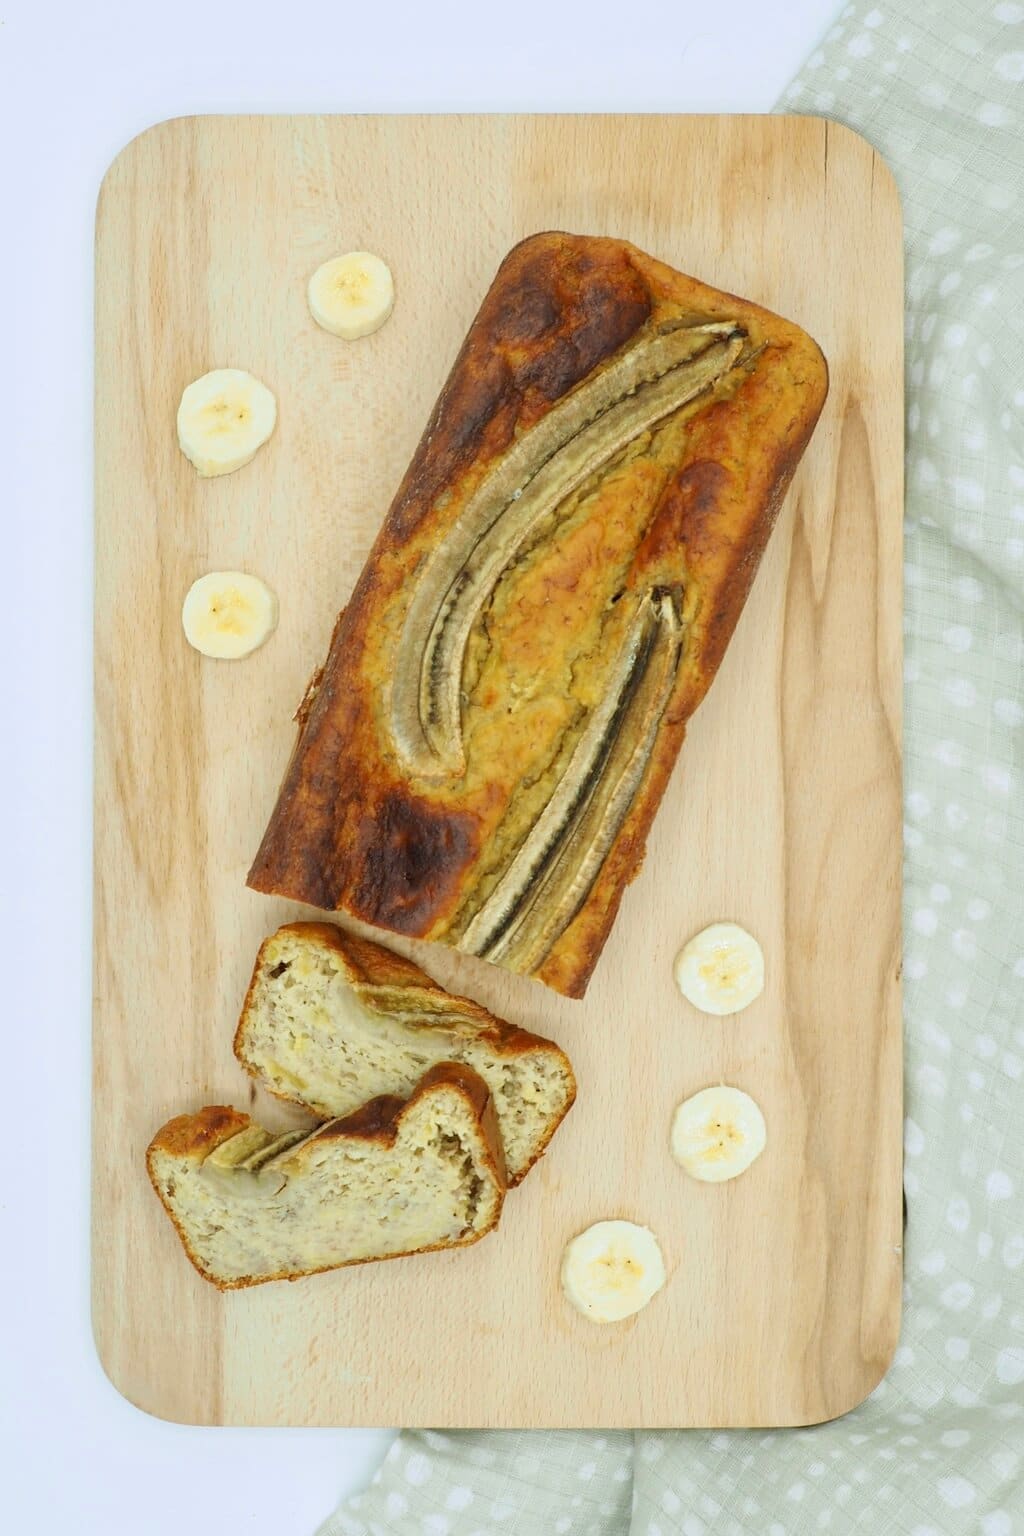 Banana bread